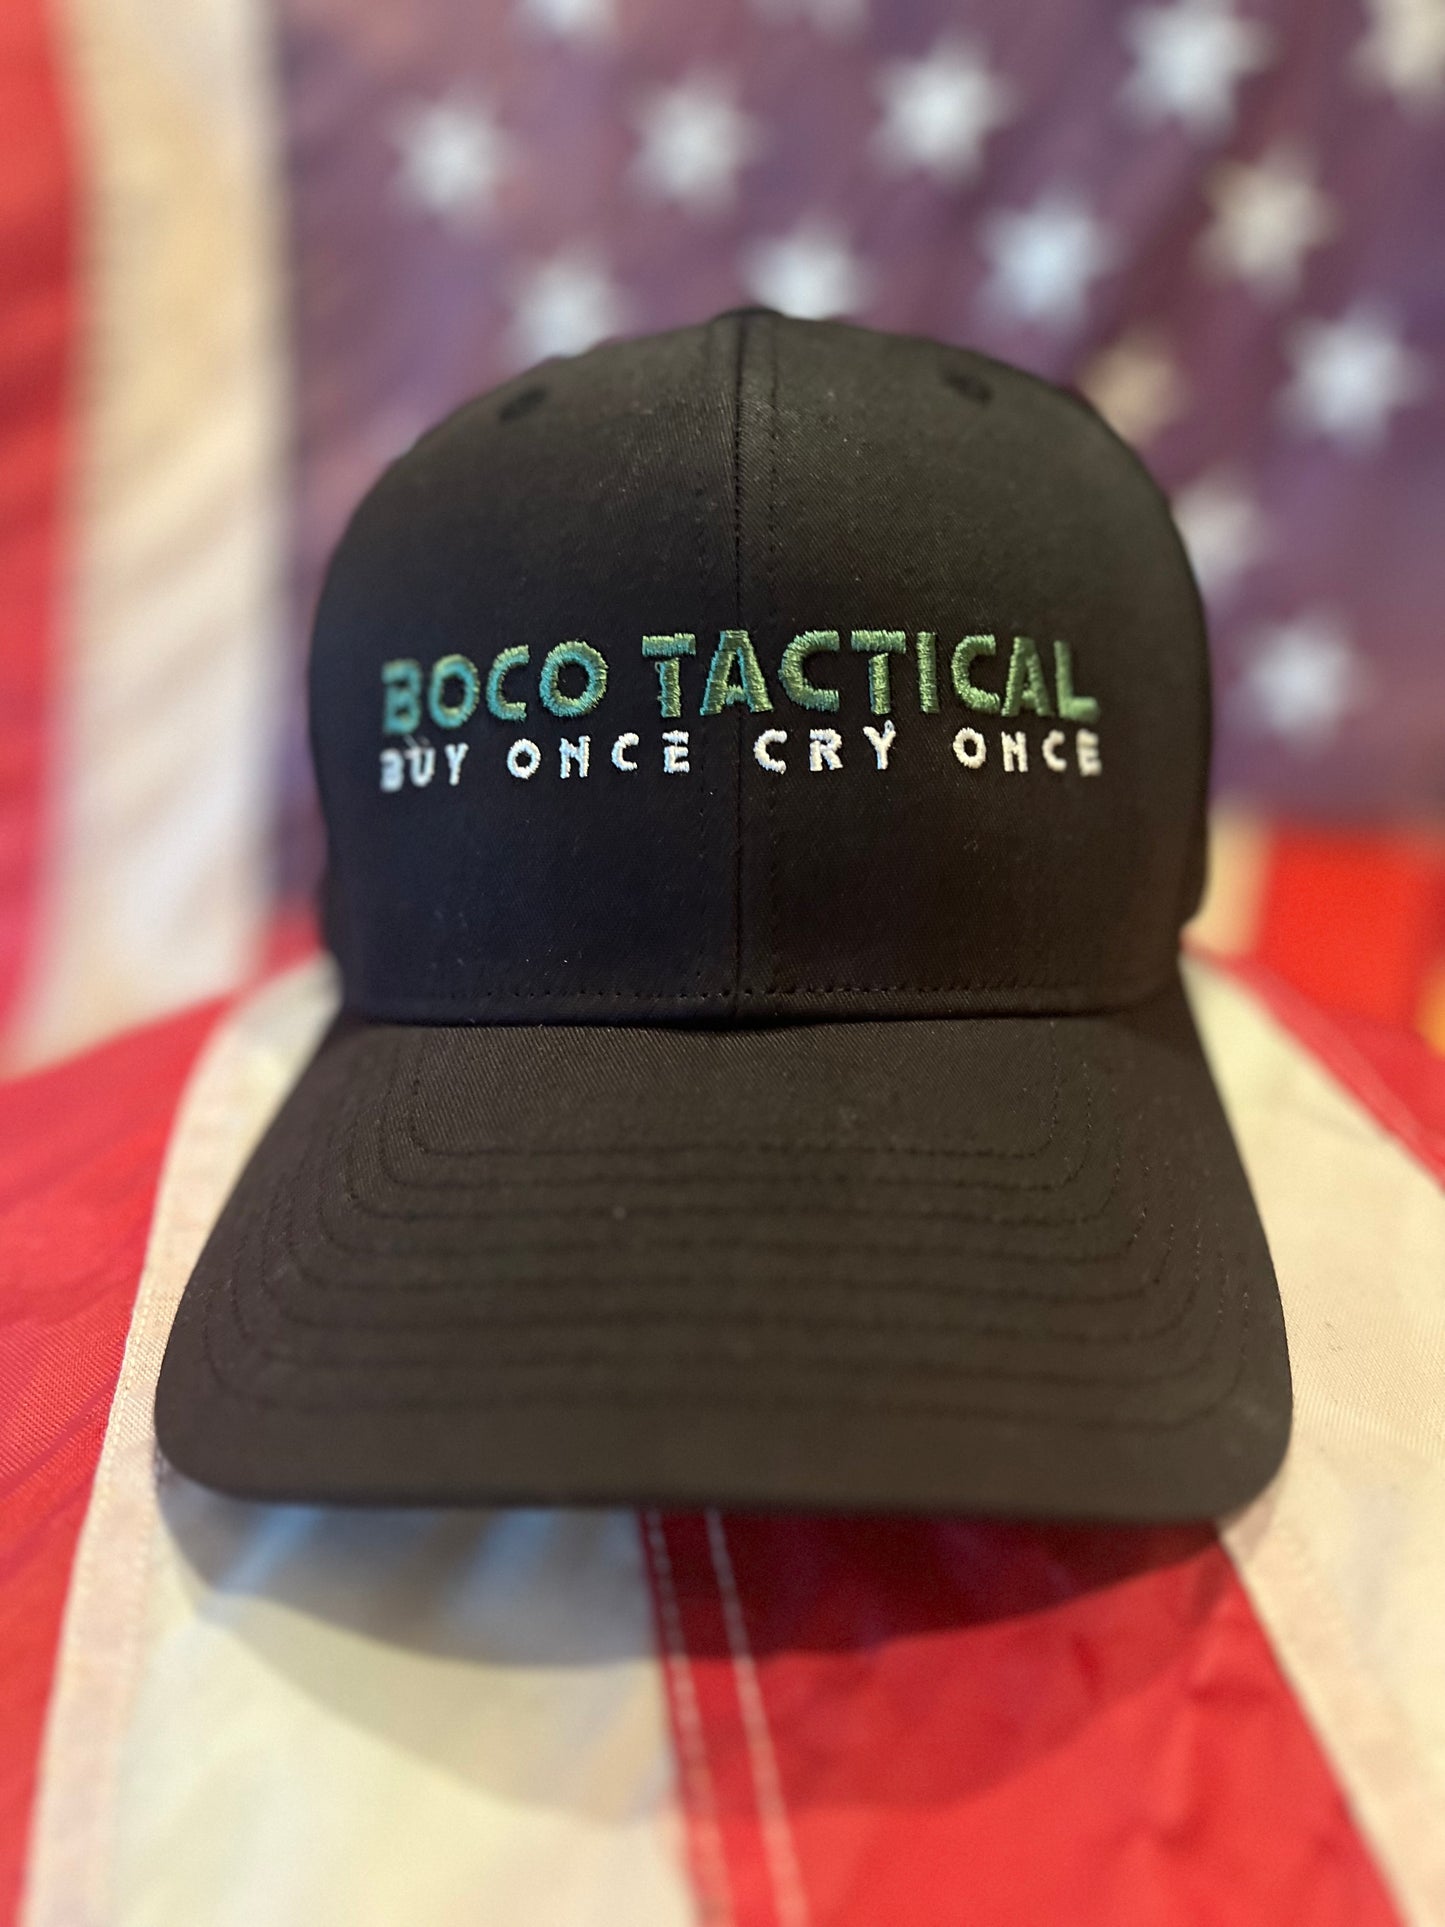 BOCO Tactical Original Snapback